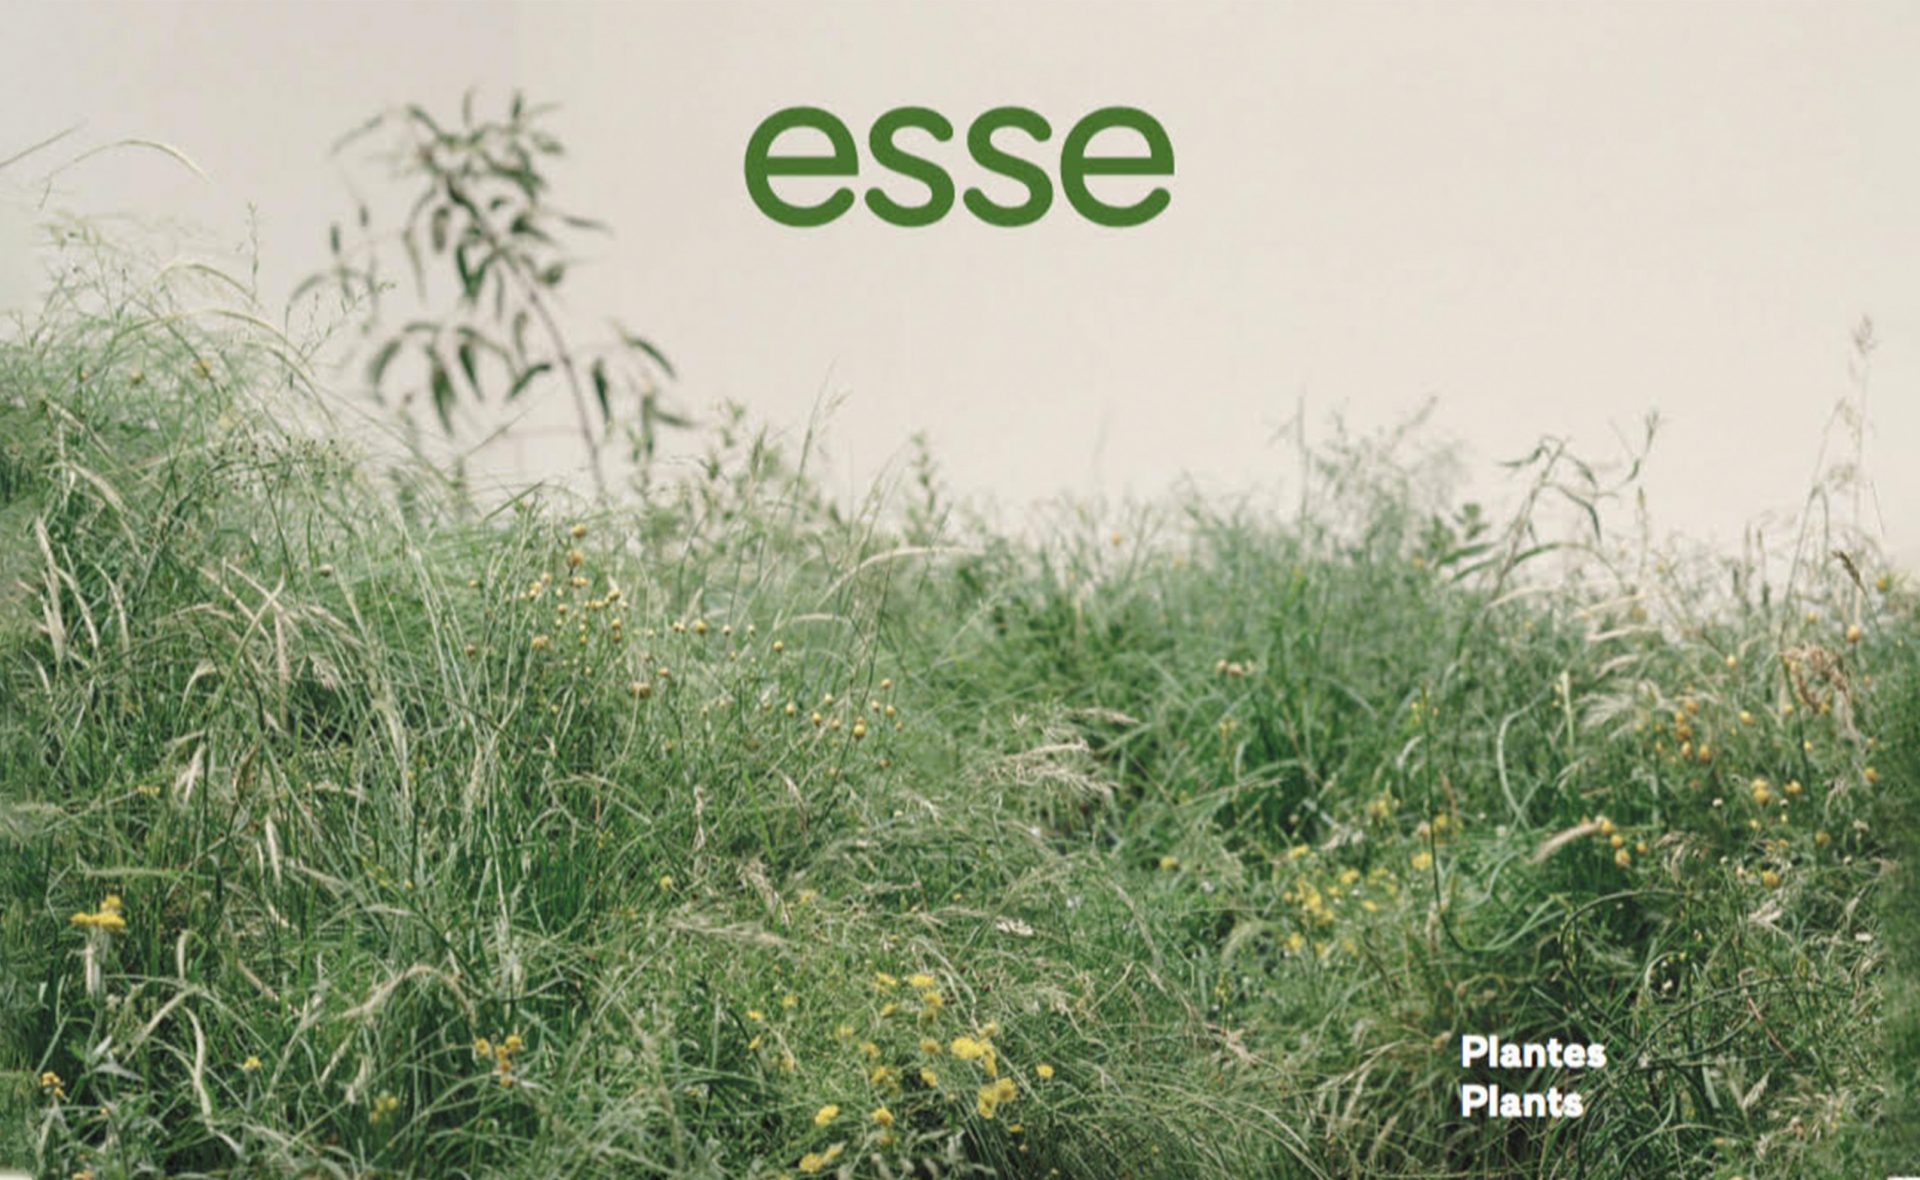 Luce meunier, Anne Roger, Revue critique pour Récit d'un parcours plastique, Esse arts + opinions, Numéro 99: Plantes, 2020